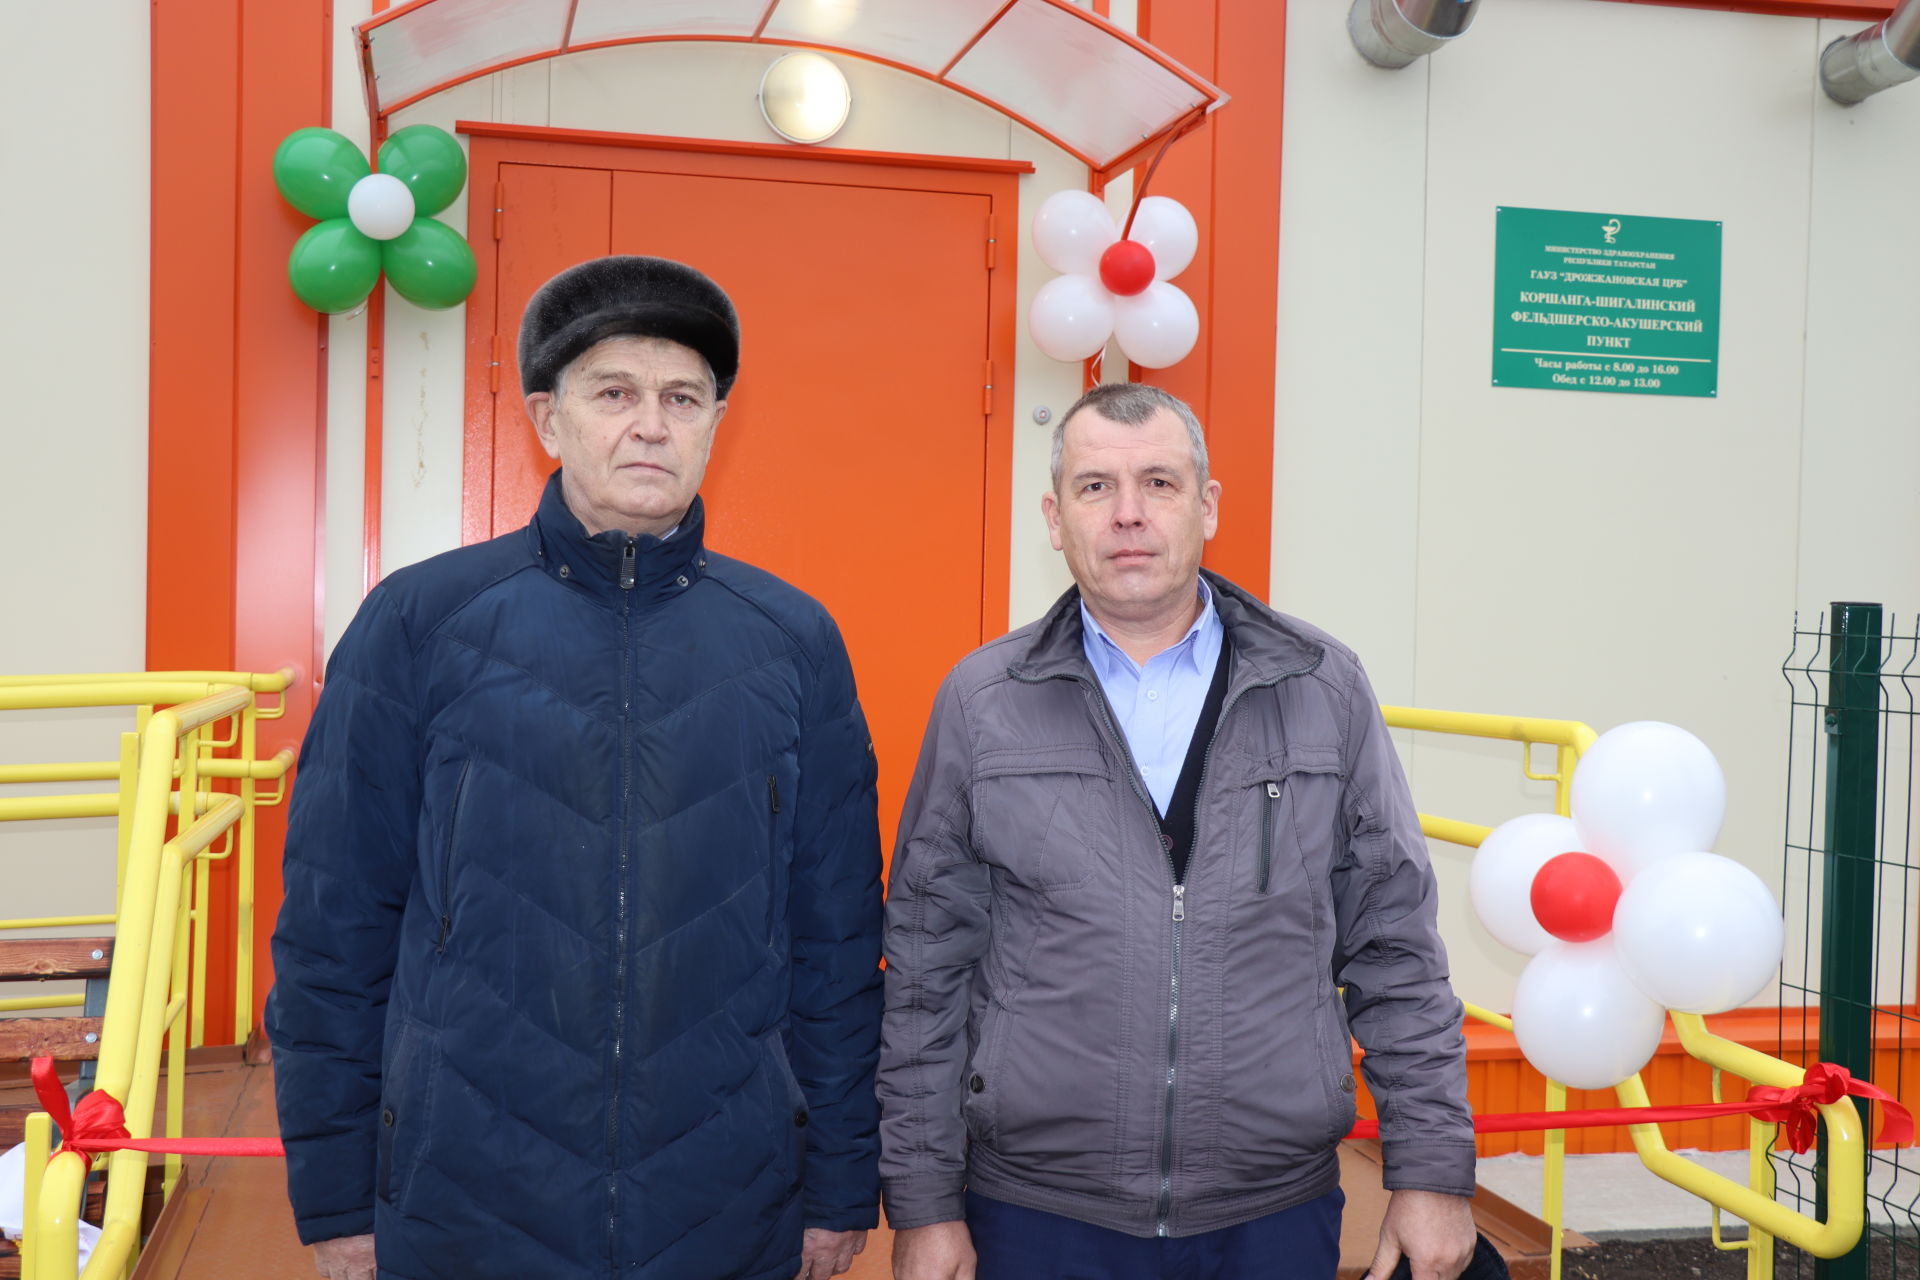 В Дрожжановском районе открыли спортплощадку, ФАП и парк